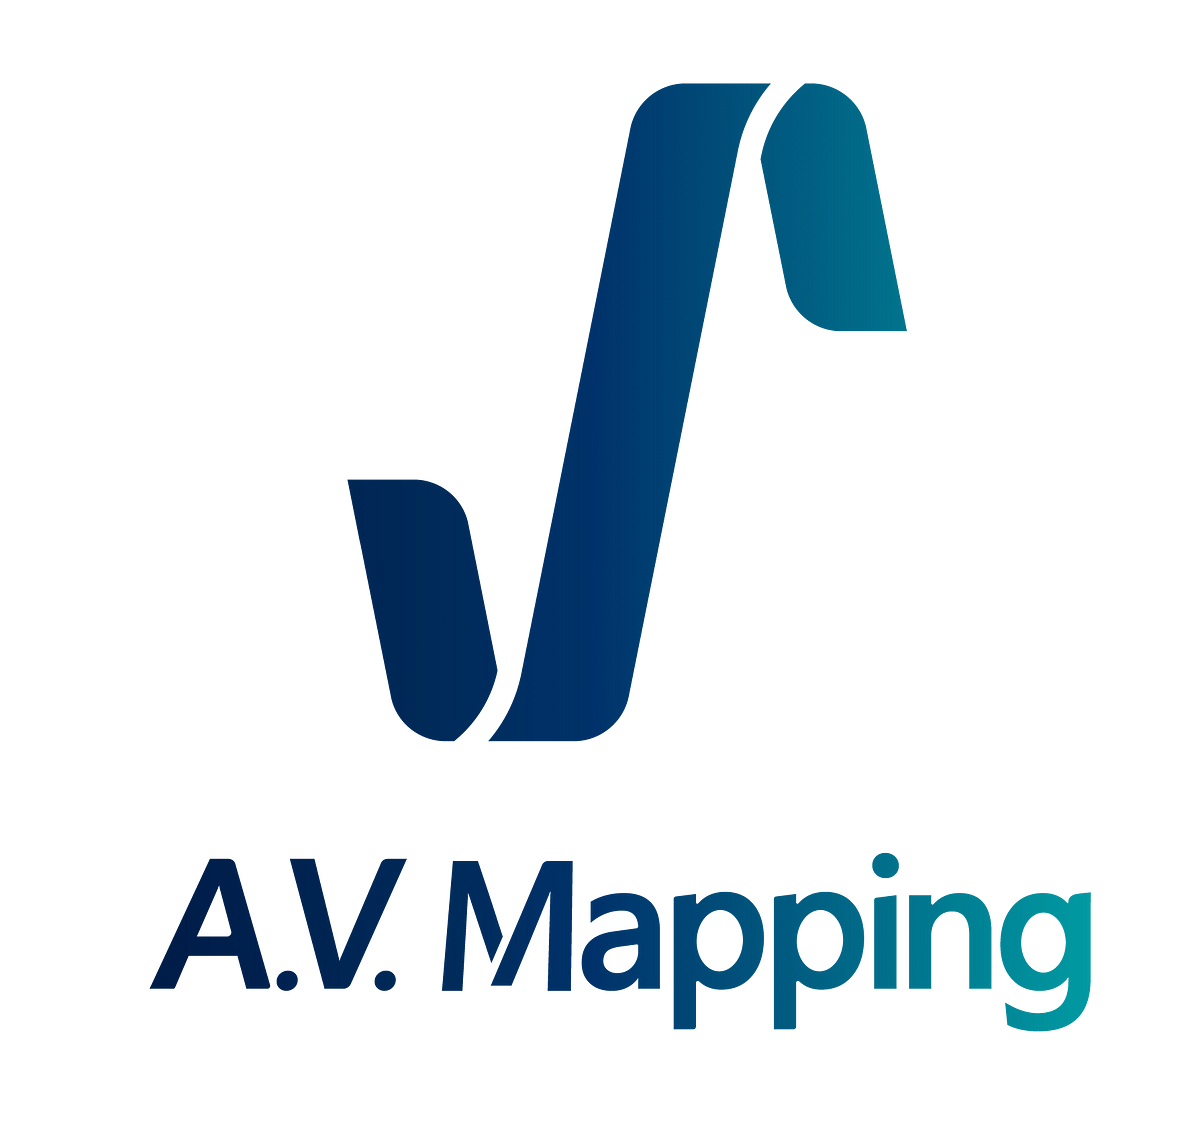 Brand Guide Line - AVMapping